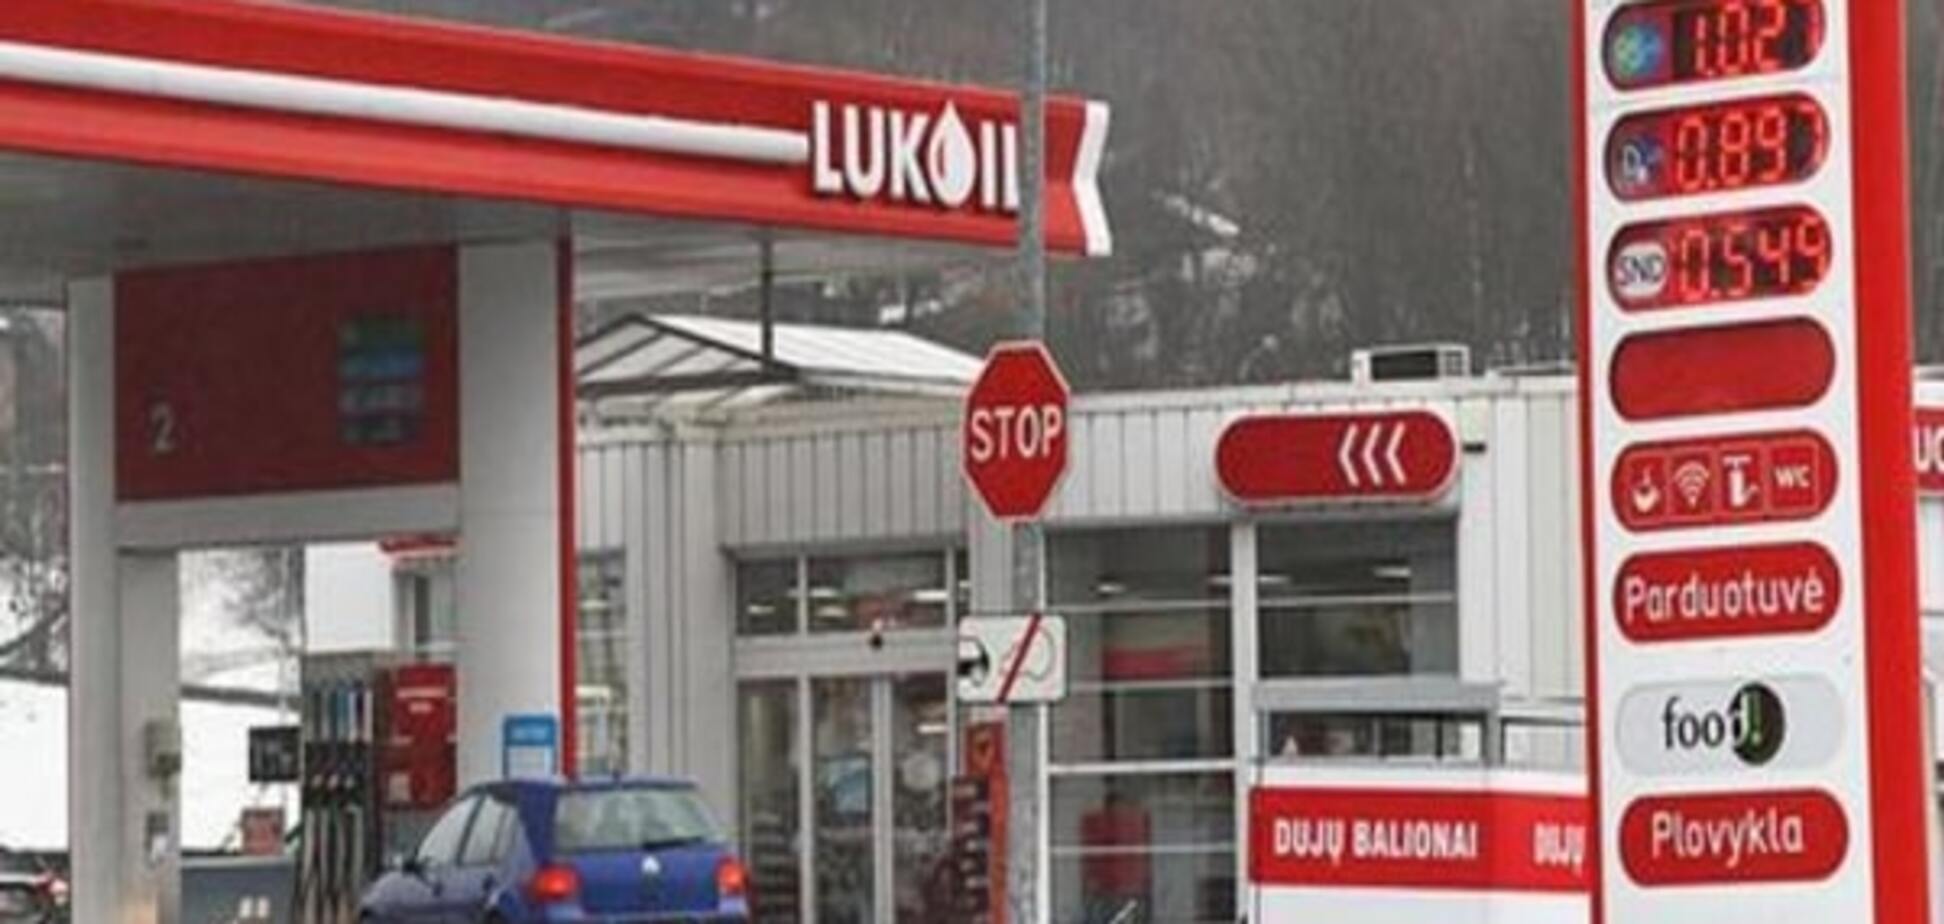 Литва без 'Лукойла': нефтетрейдер уходит, жалуясь на 'антироссийские настроения'